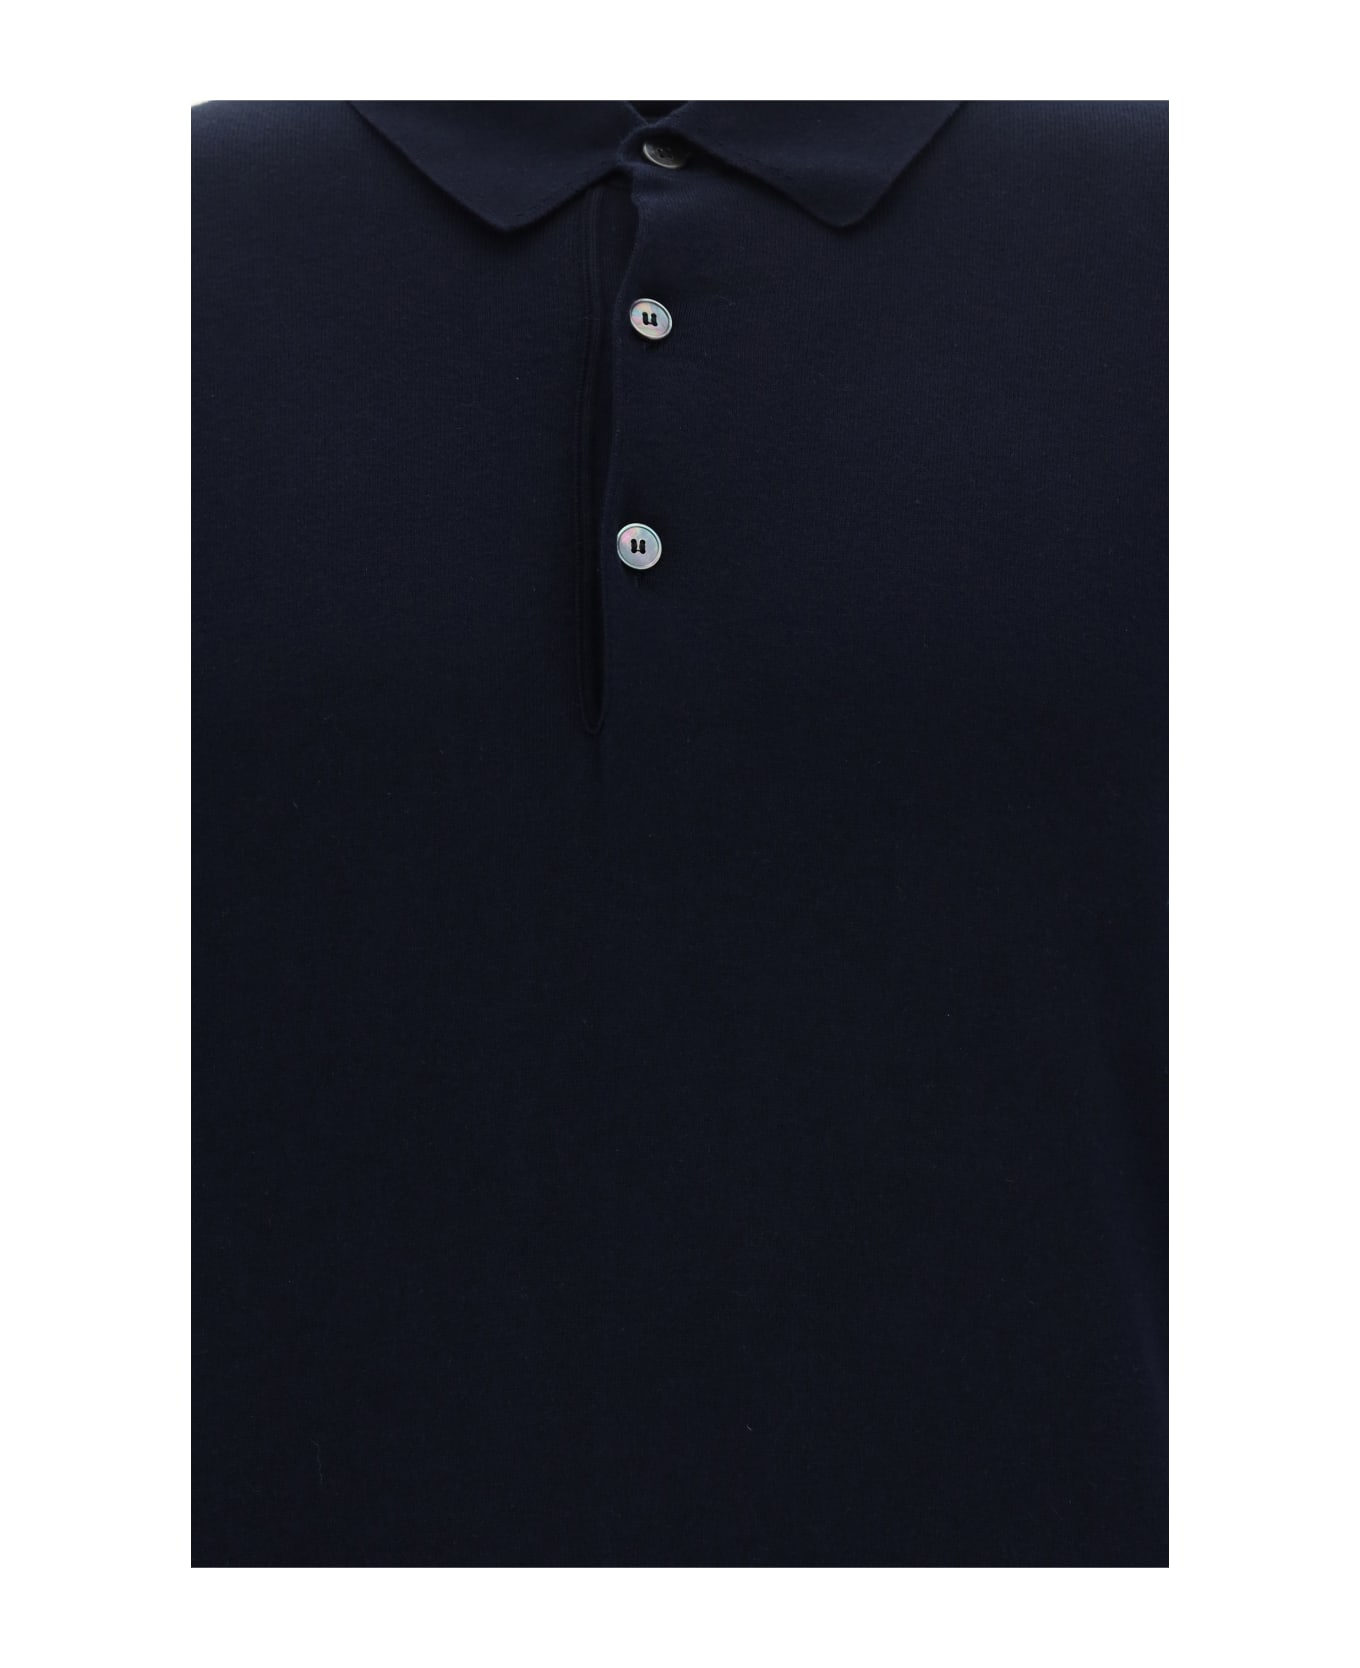 Zegna Polo Shirt - Blue Navy Unito